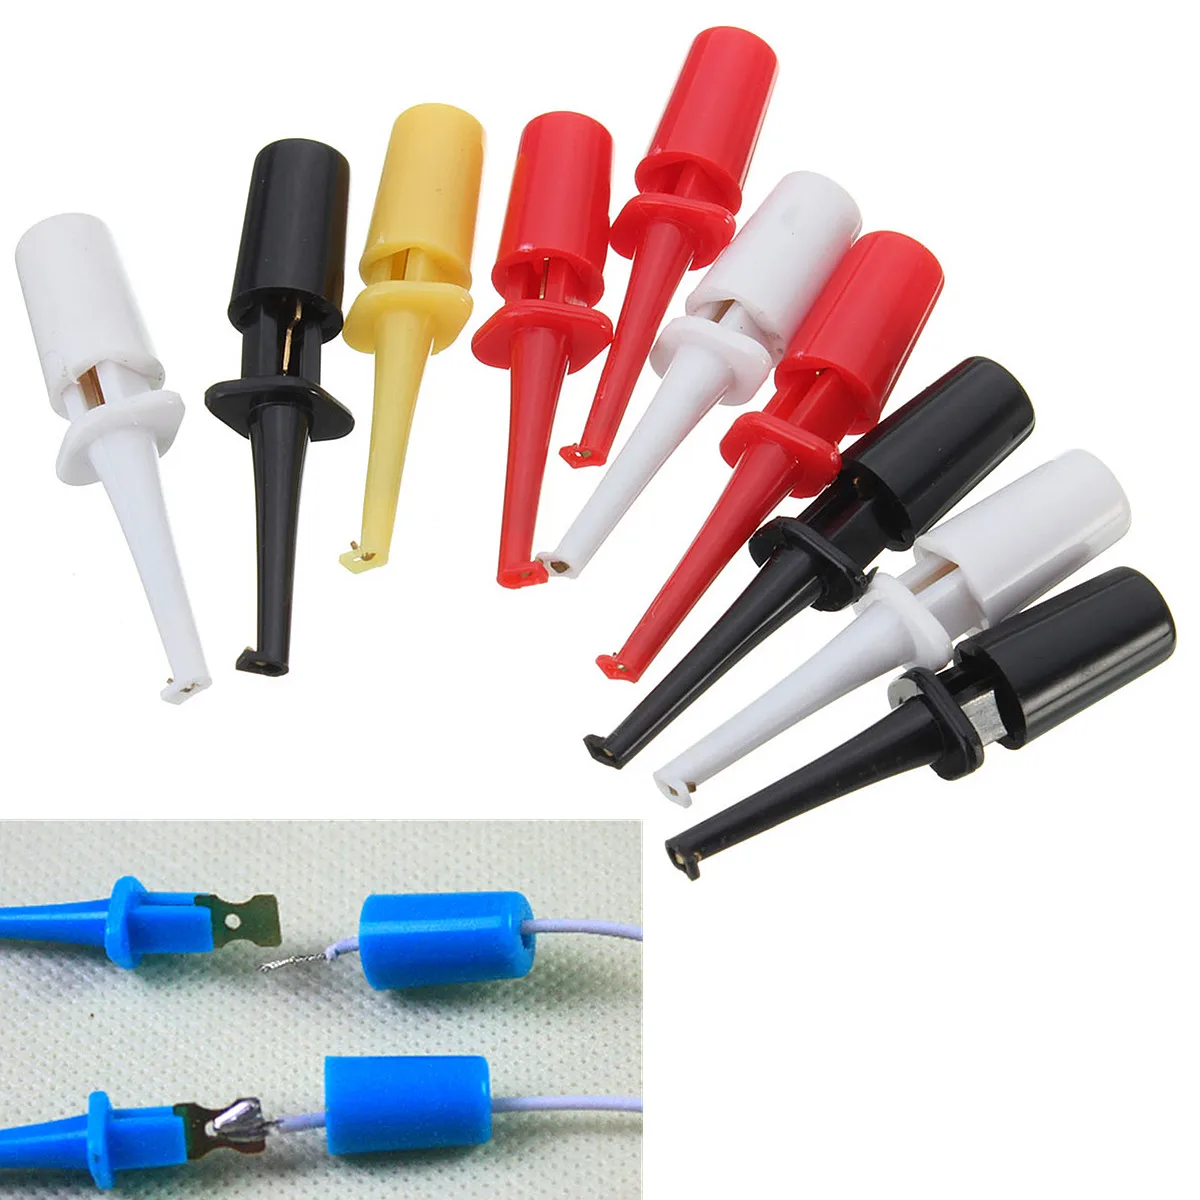 10x Multimeter Lead Wire Kit Test Hook Clip Grabbers Test Probe SMT SMD 